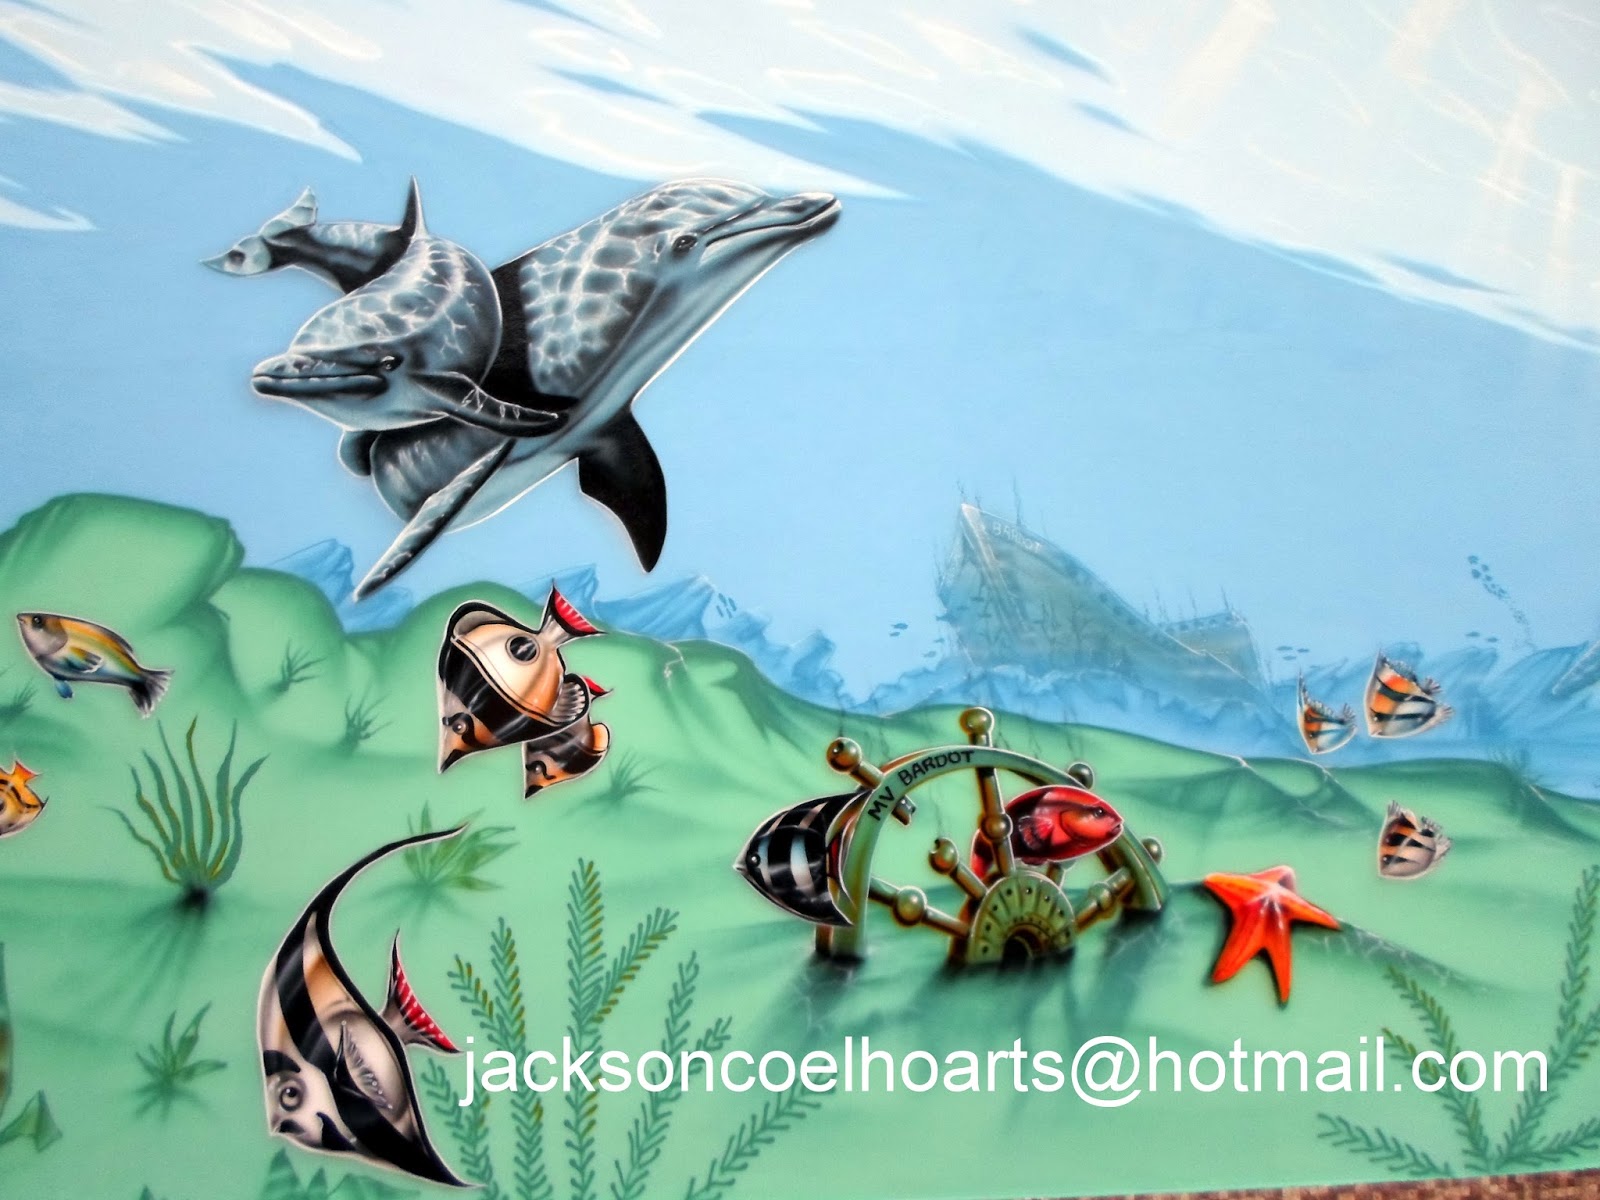 Pintura em Sala de Jogos de Condomínio – Jackson Coelho